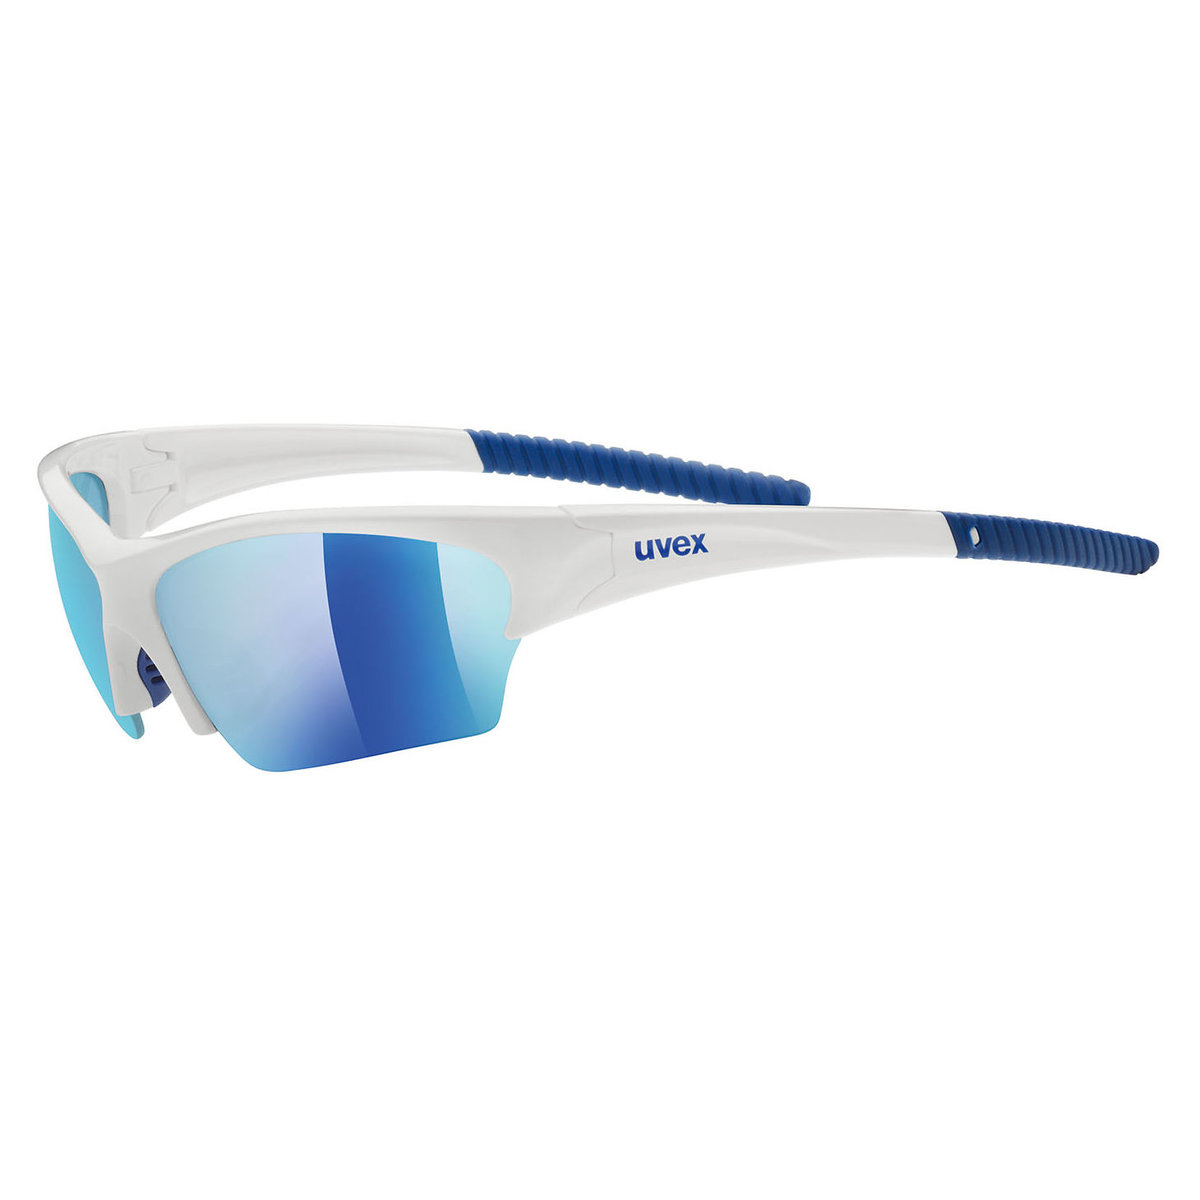 Uvex Okulary Sunsation biały-niebieski / Kolor soczewek: niebieskie / Rodzaj szkieł: standardowe 53.0.606.8416